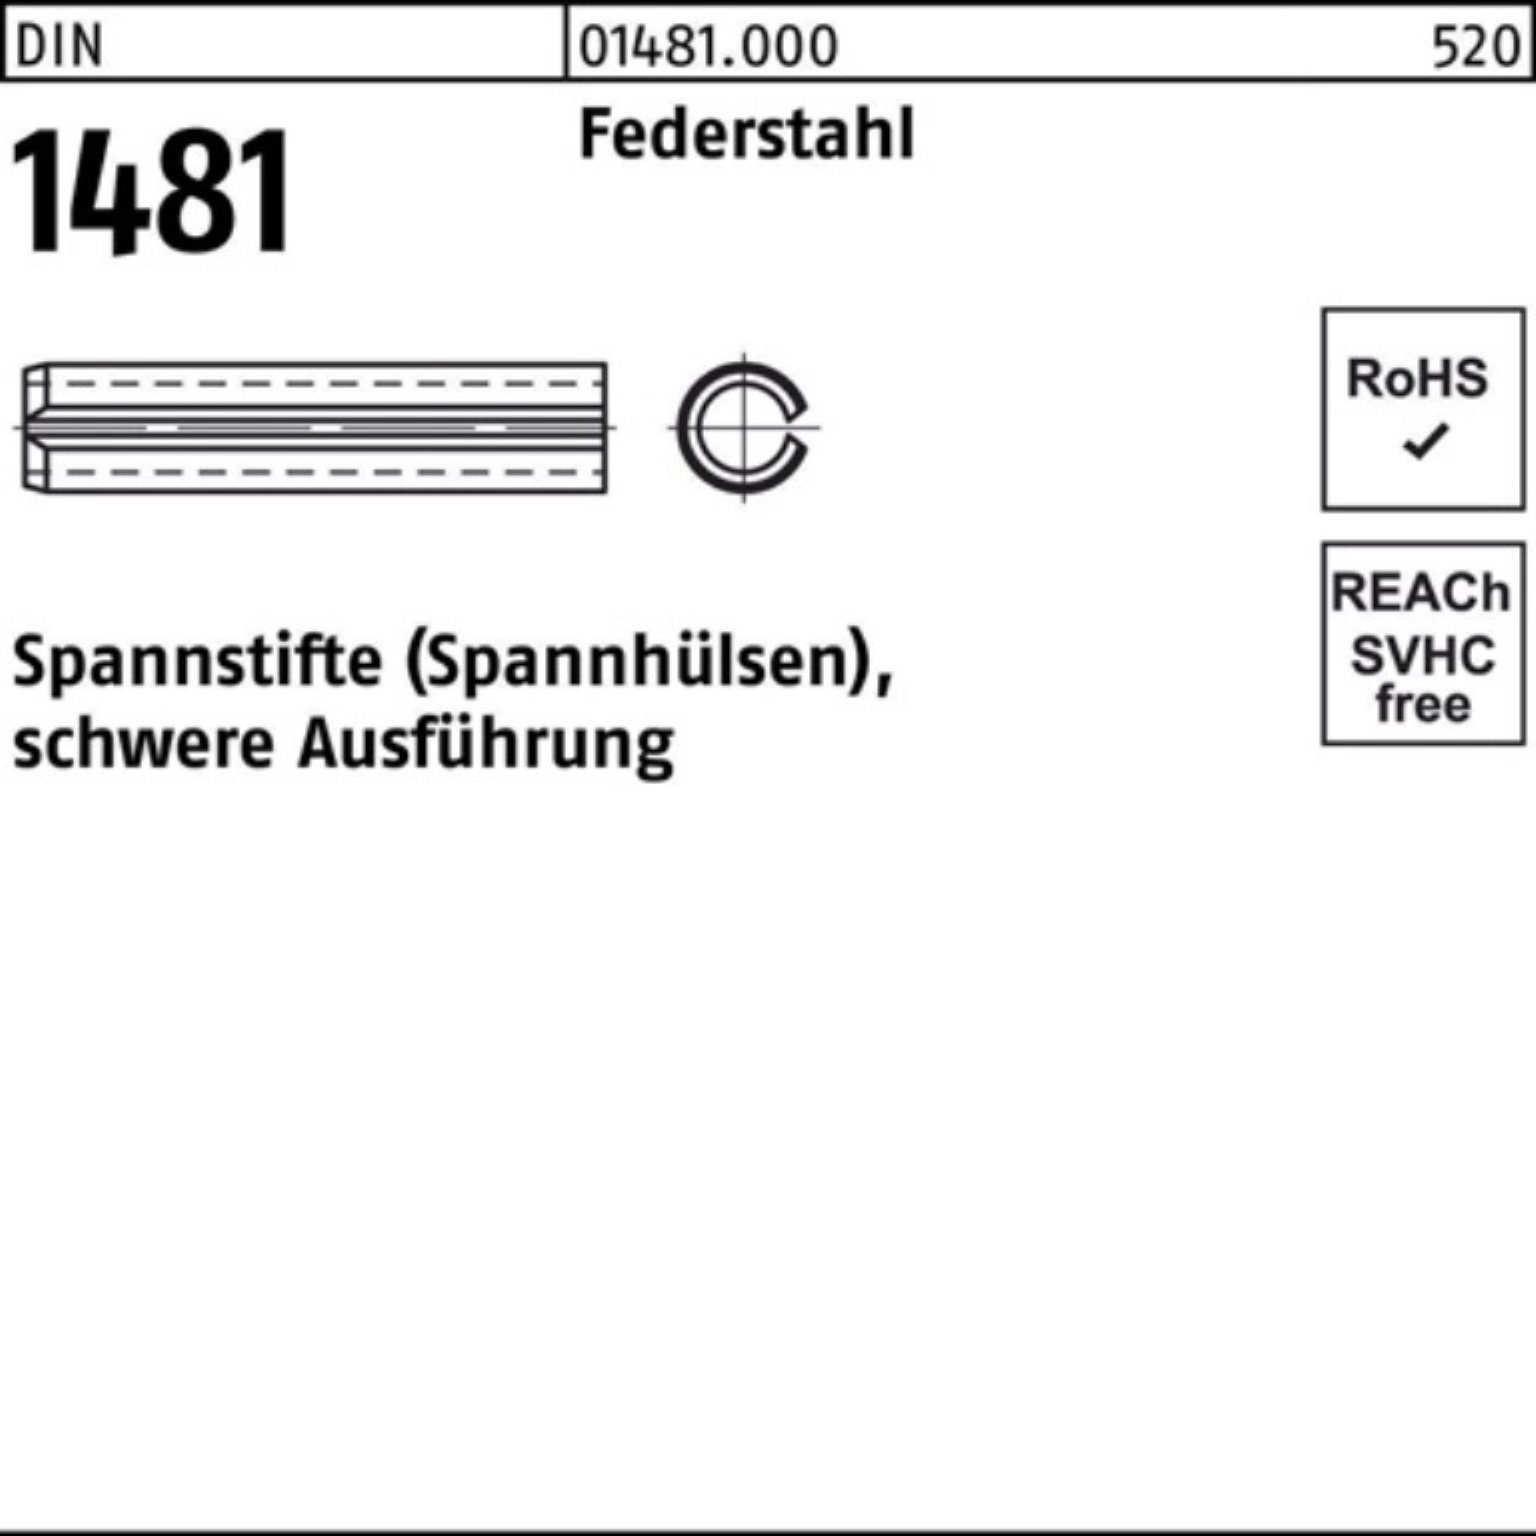 100er Federstahl DIN 28x Spannstift Reyher Spannstift 1481 Ausführung Pack schwere 1 50